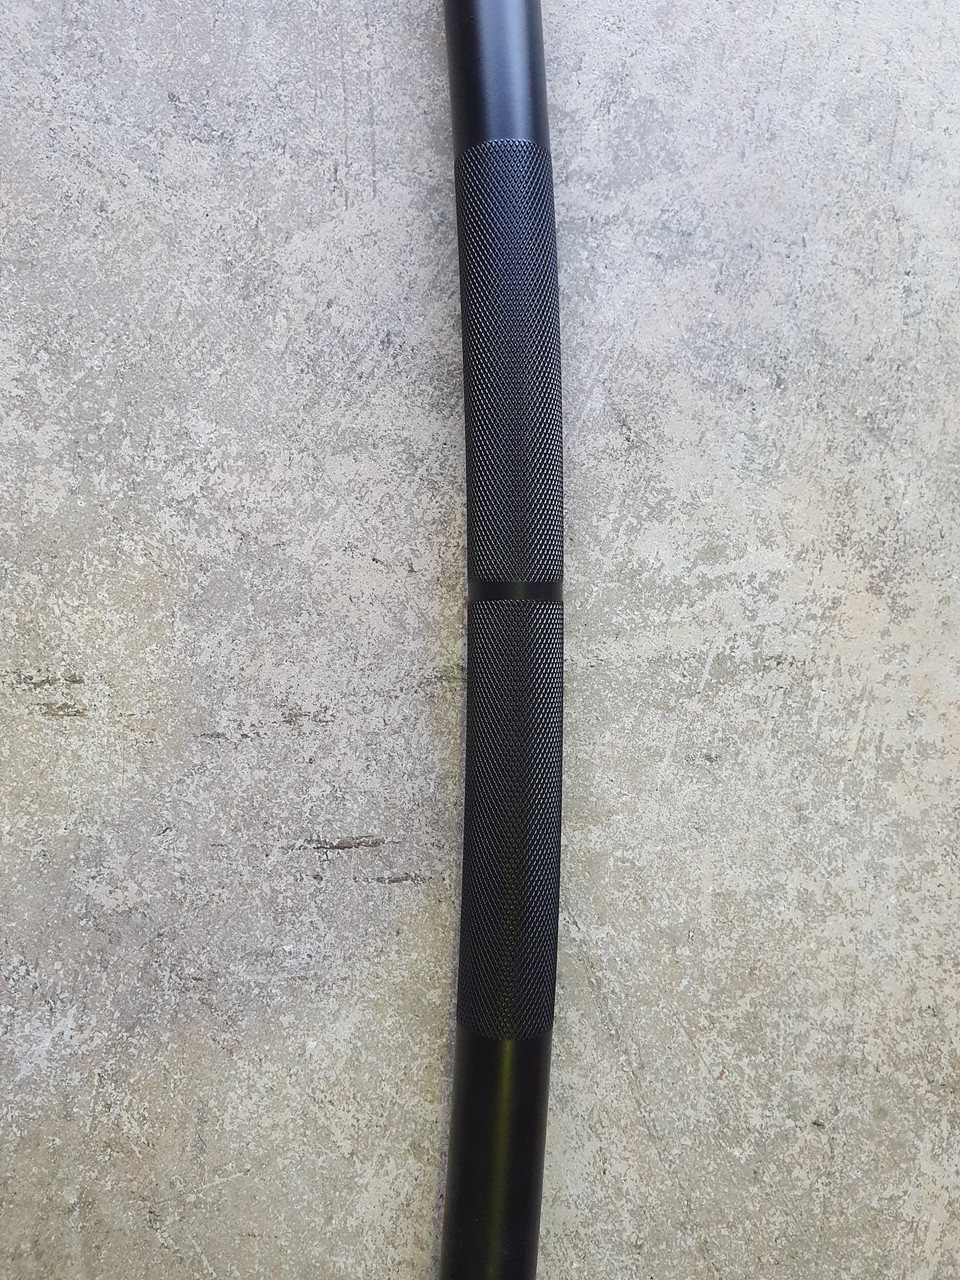 GOLIATH BOW BAR V2.0 - 26kg 35mm bow bar - Black zinc